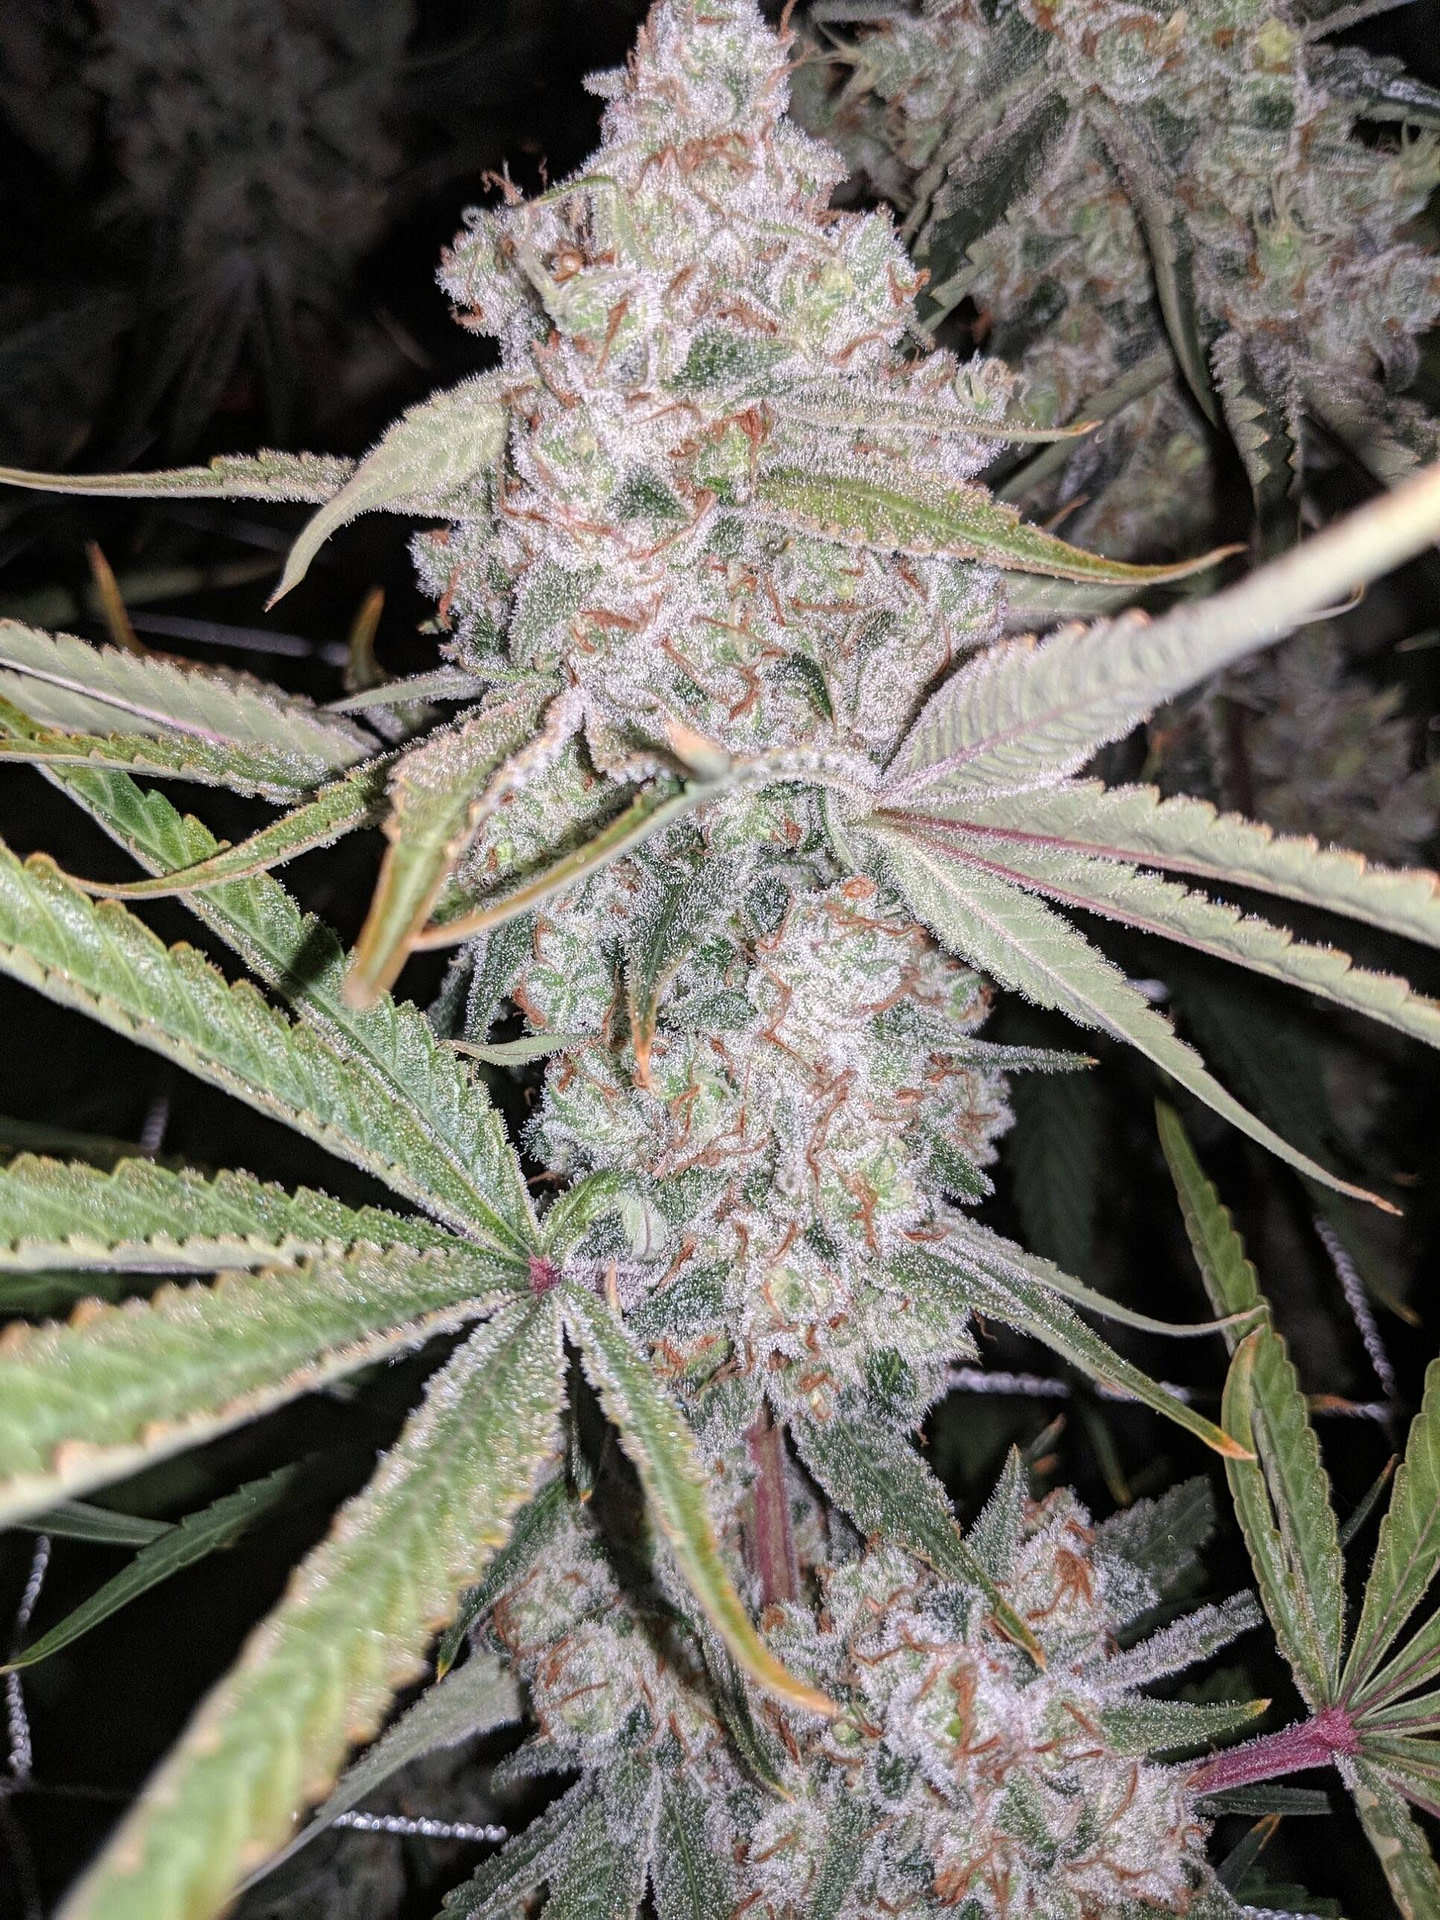 fleur-du-mal-indiana-bubblegum-regular-cannabis-seeds-1